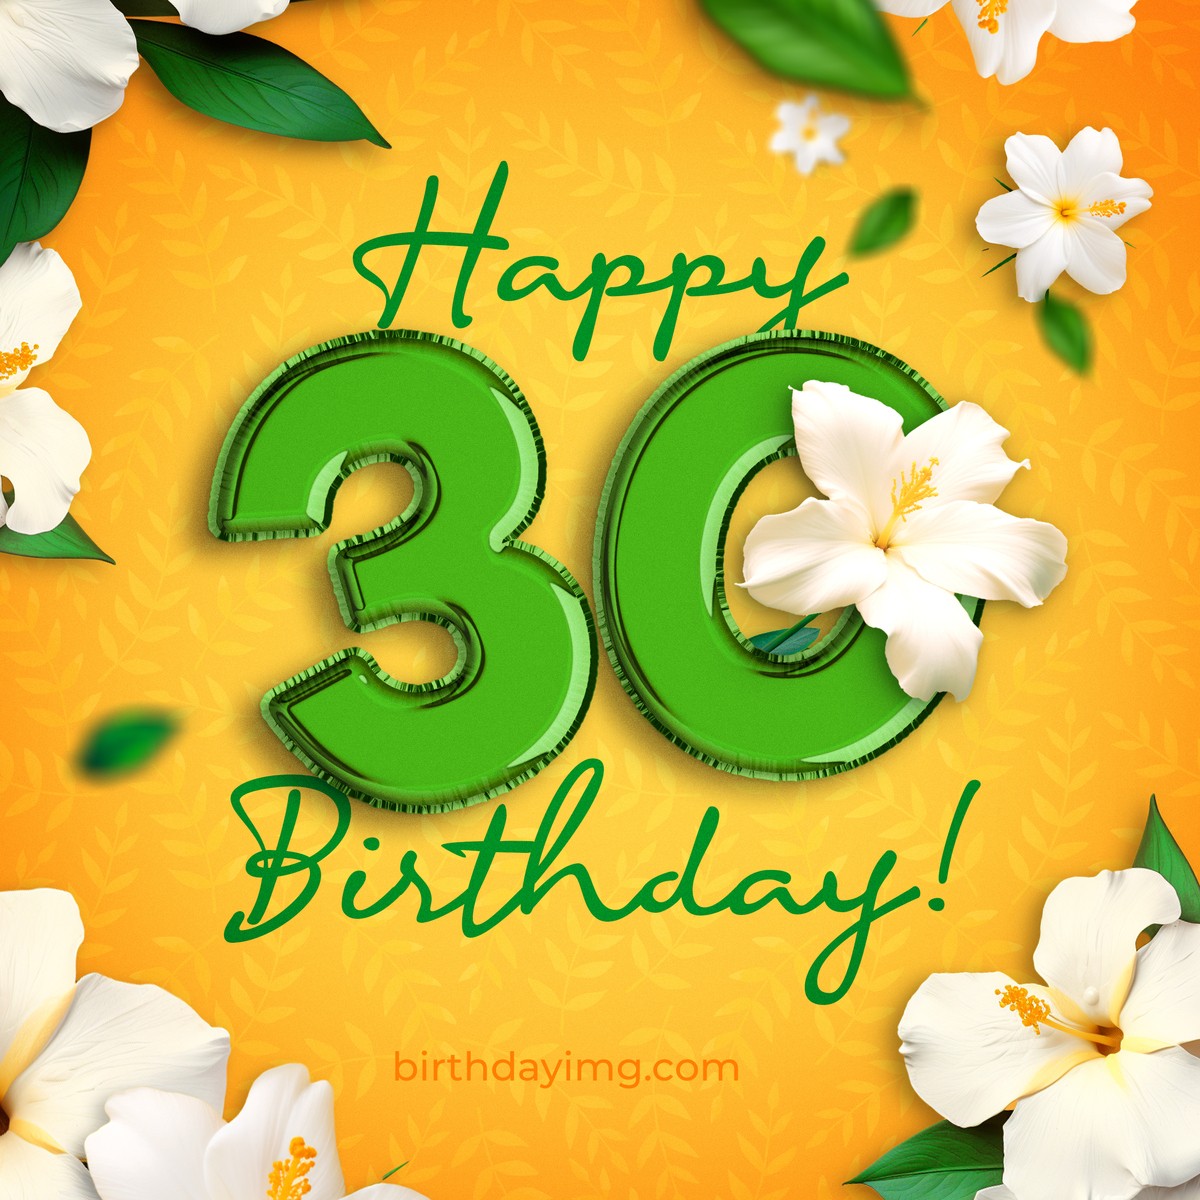 Free Birthday Image for 30 years - birthdayimg.com